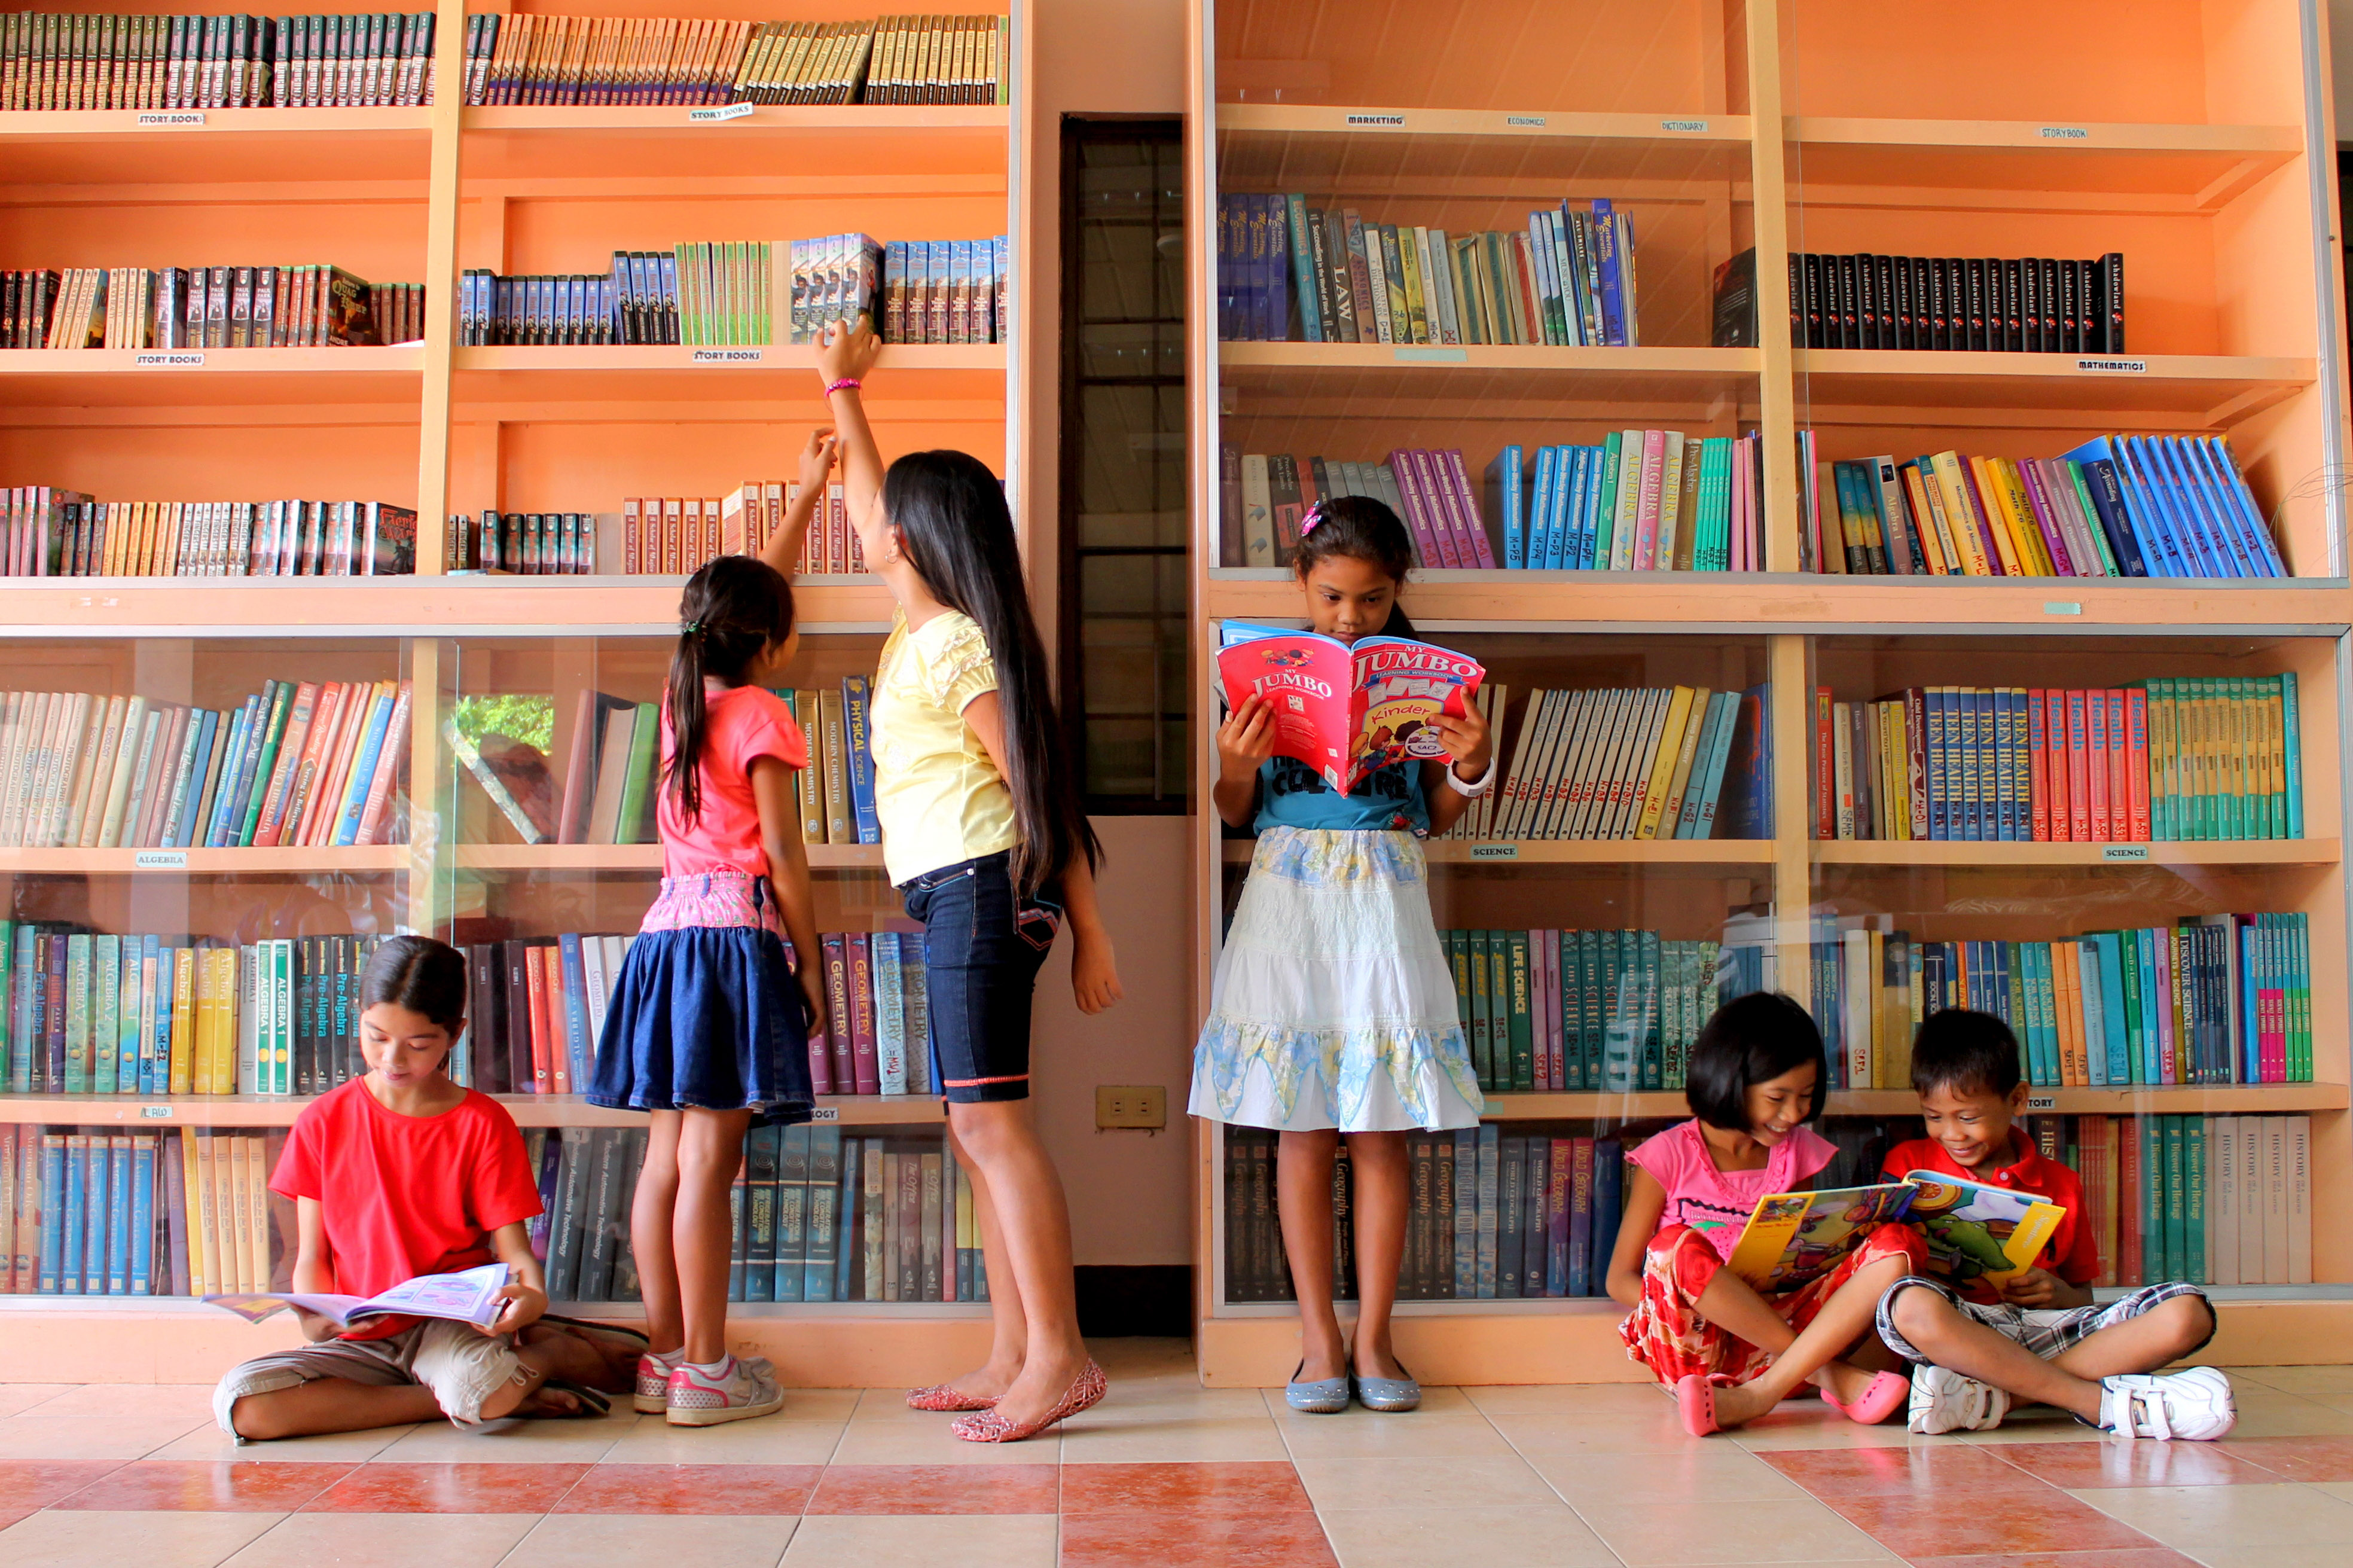 Библиотека том друзья. Фотосессия в библиотеке дети. Дети в библиотеке. Здание библиотеки для детей. Детские библиотеки.